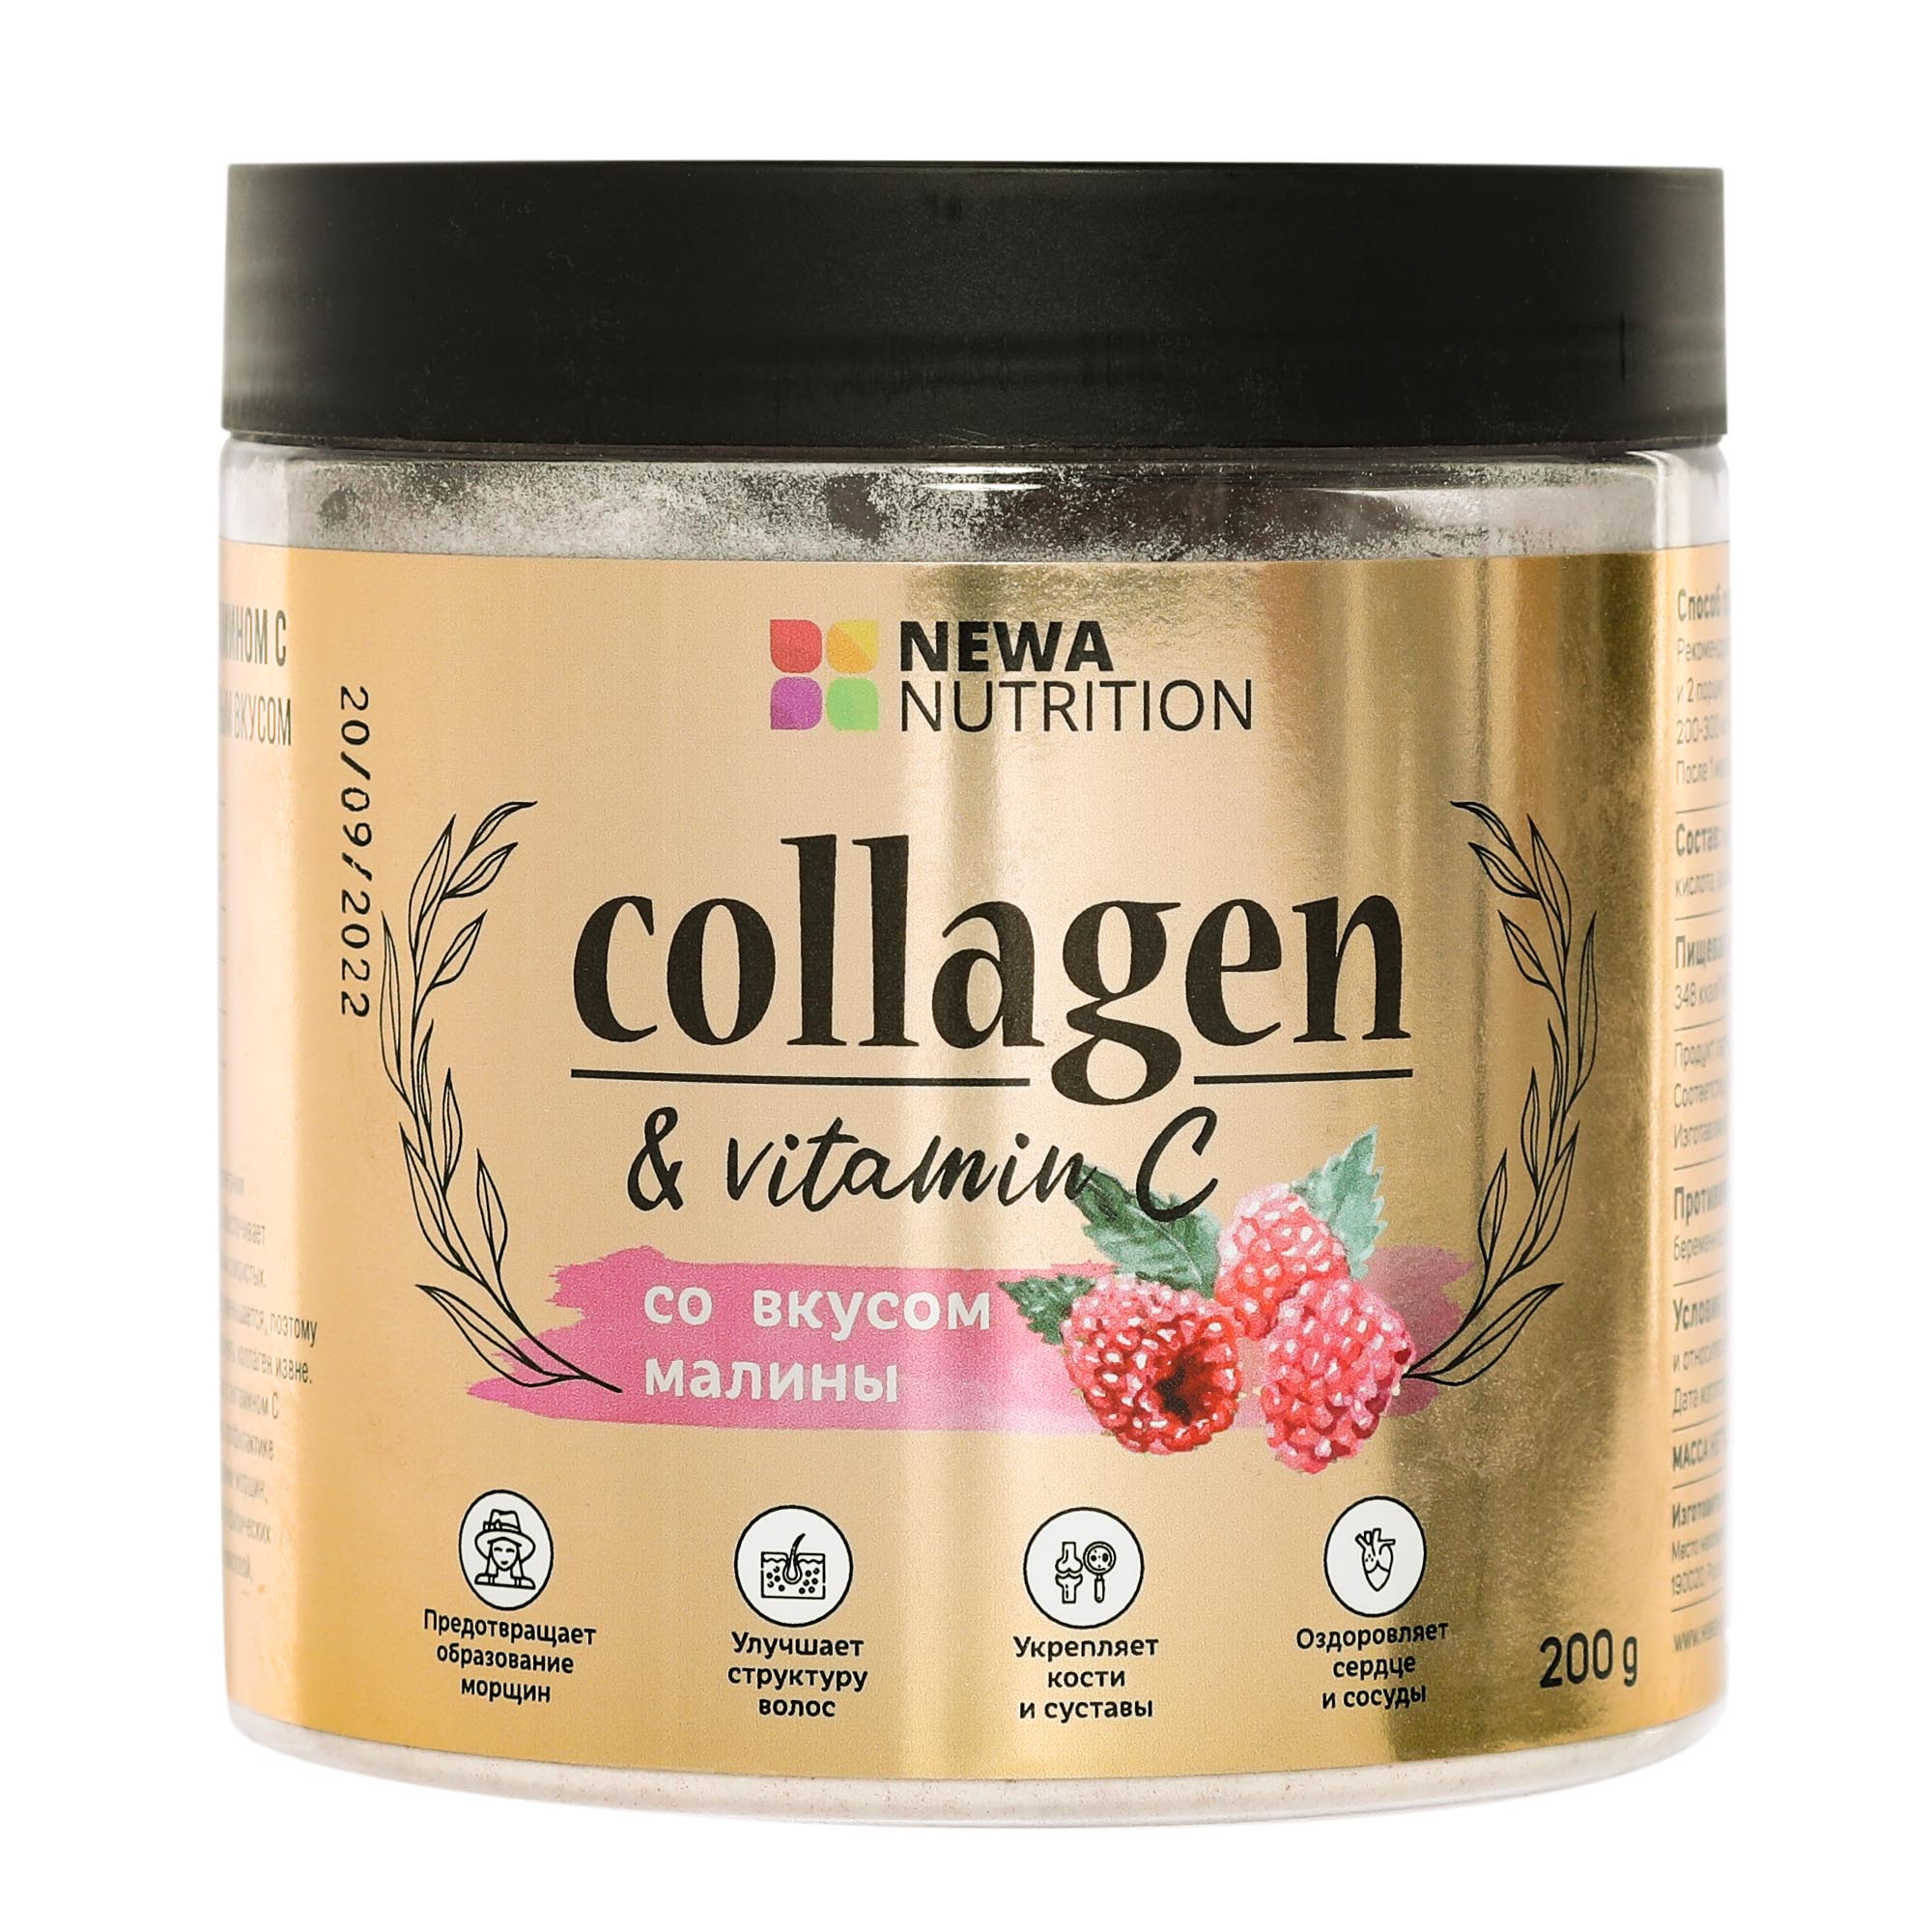 Коллаген Newa Nutrition гидролизованный с витамином С и малиновым вкусом, 200 г - фото 1